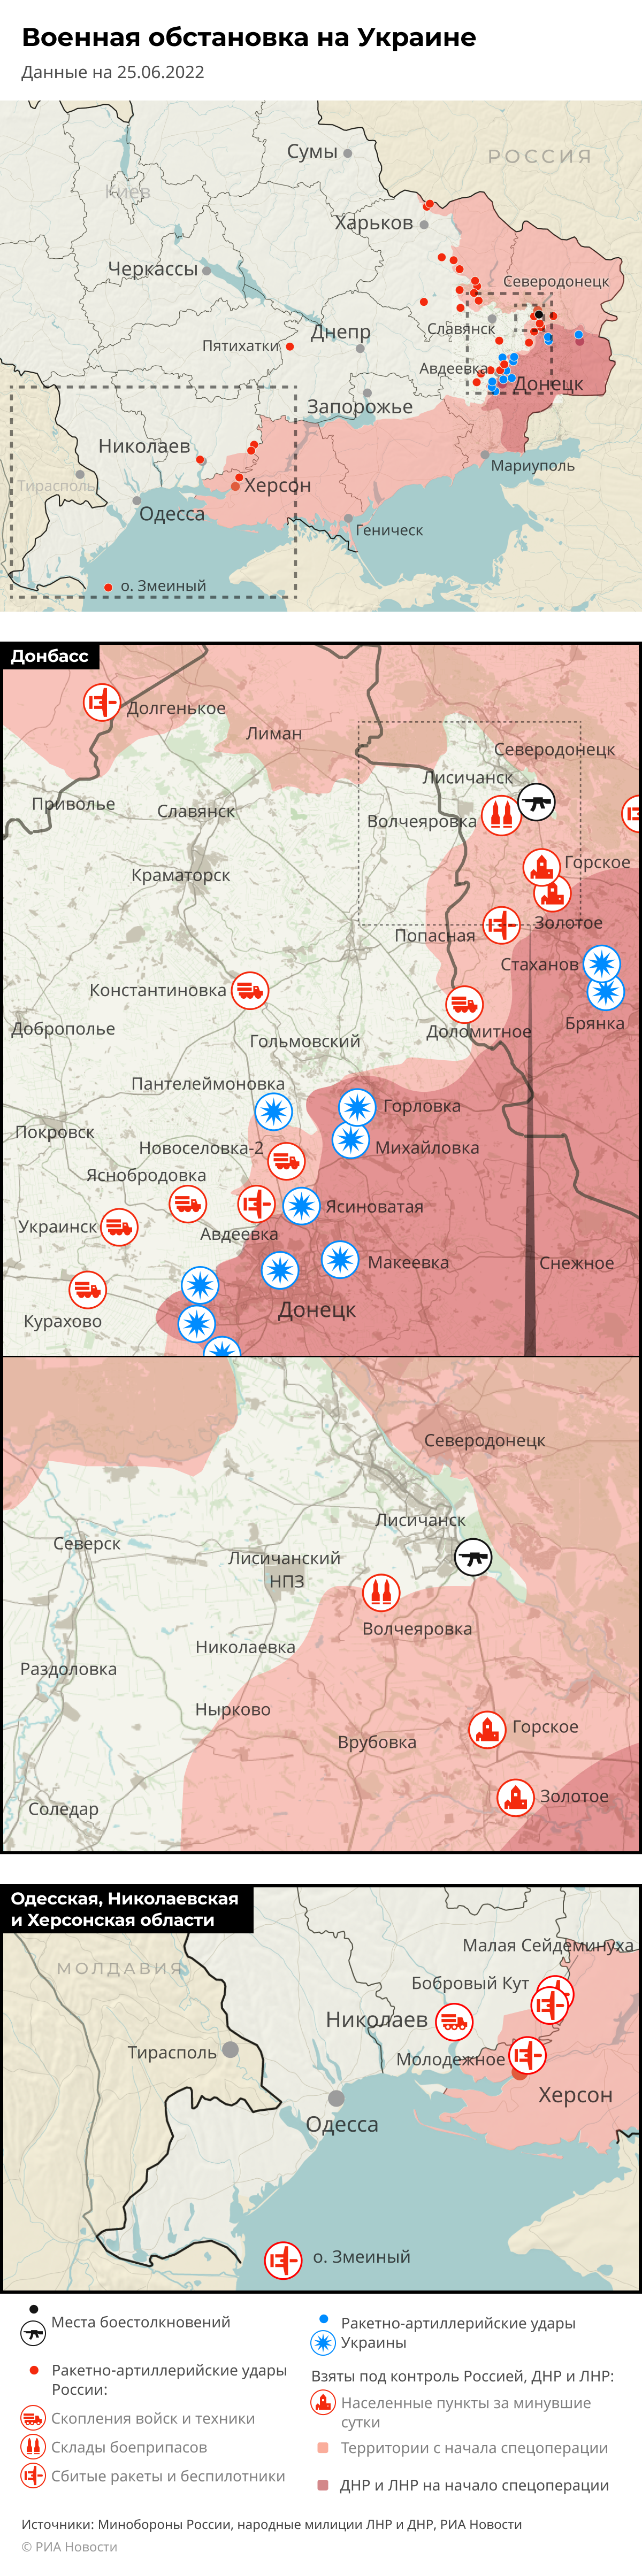 Карта спецоперации Вооруженных сил России на Украине на 25.06.2022